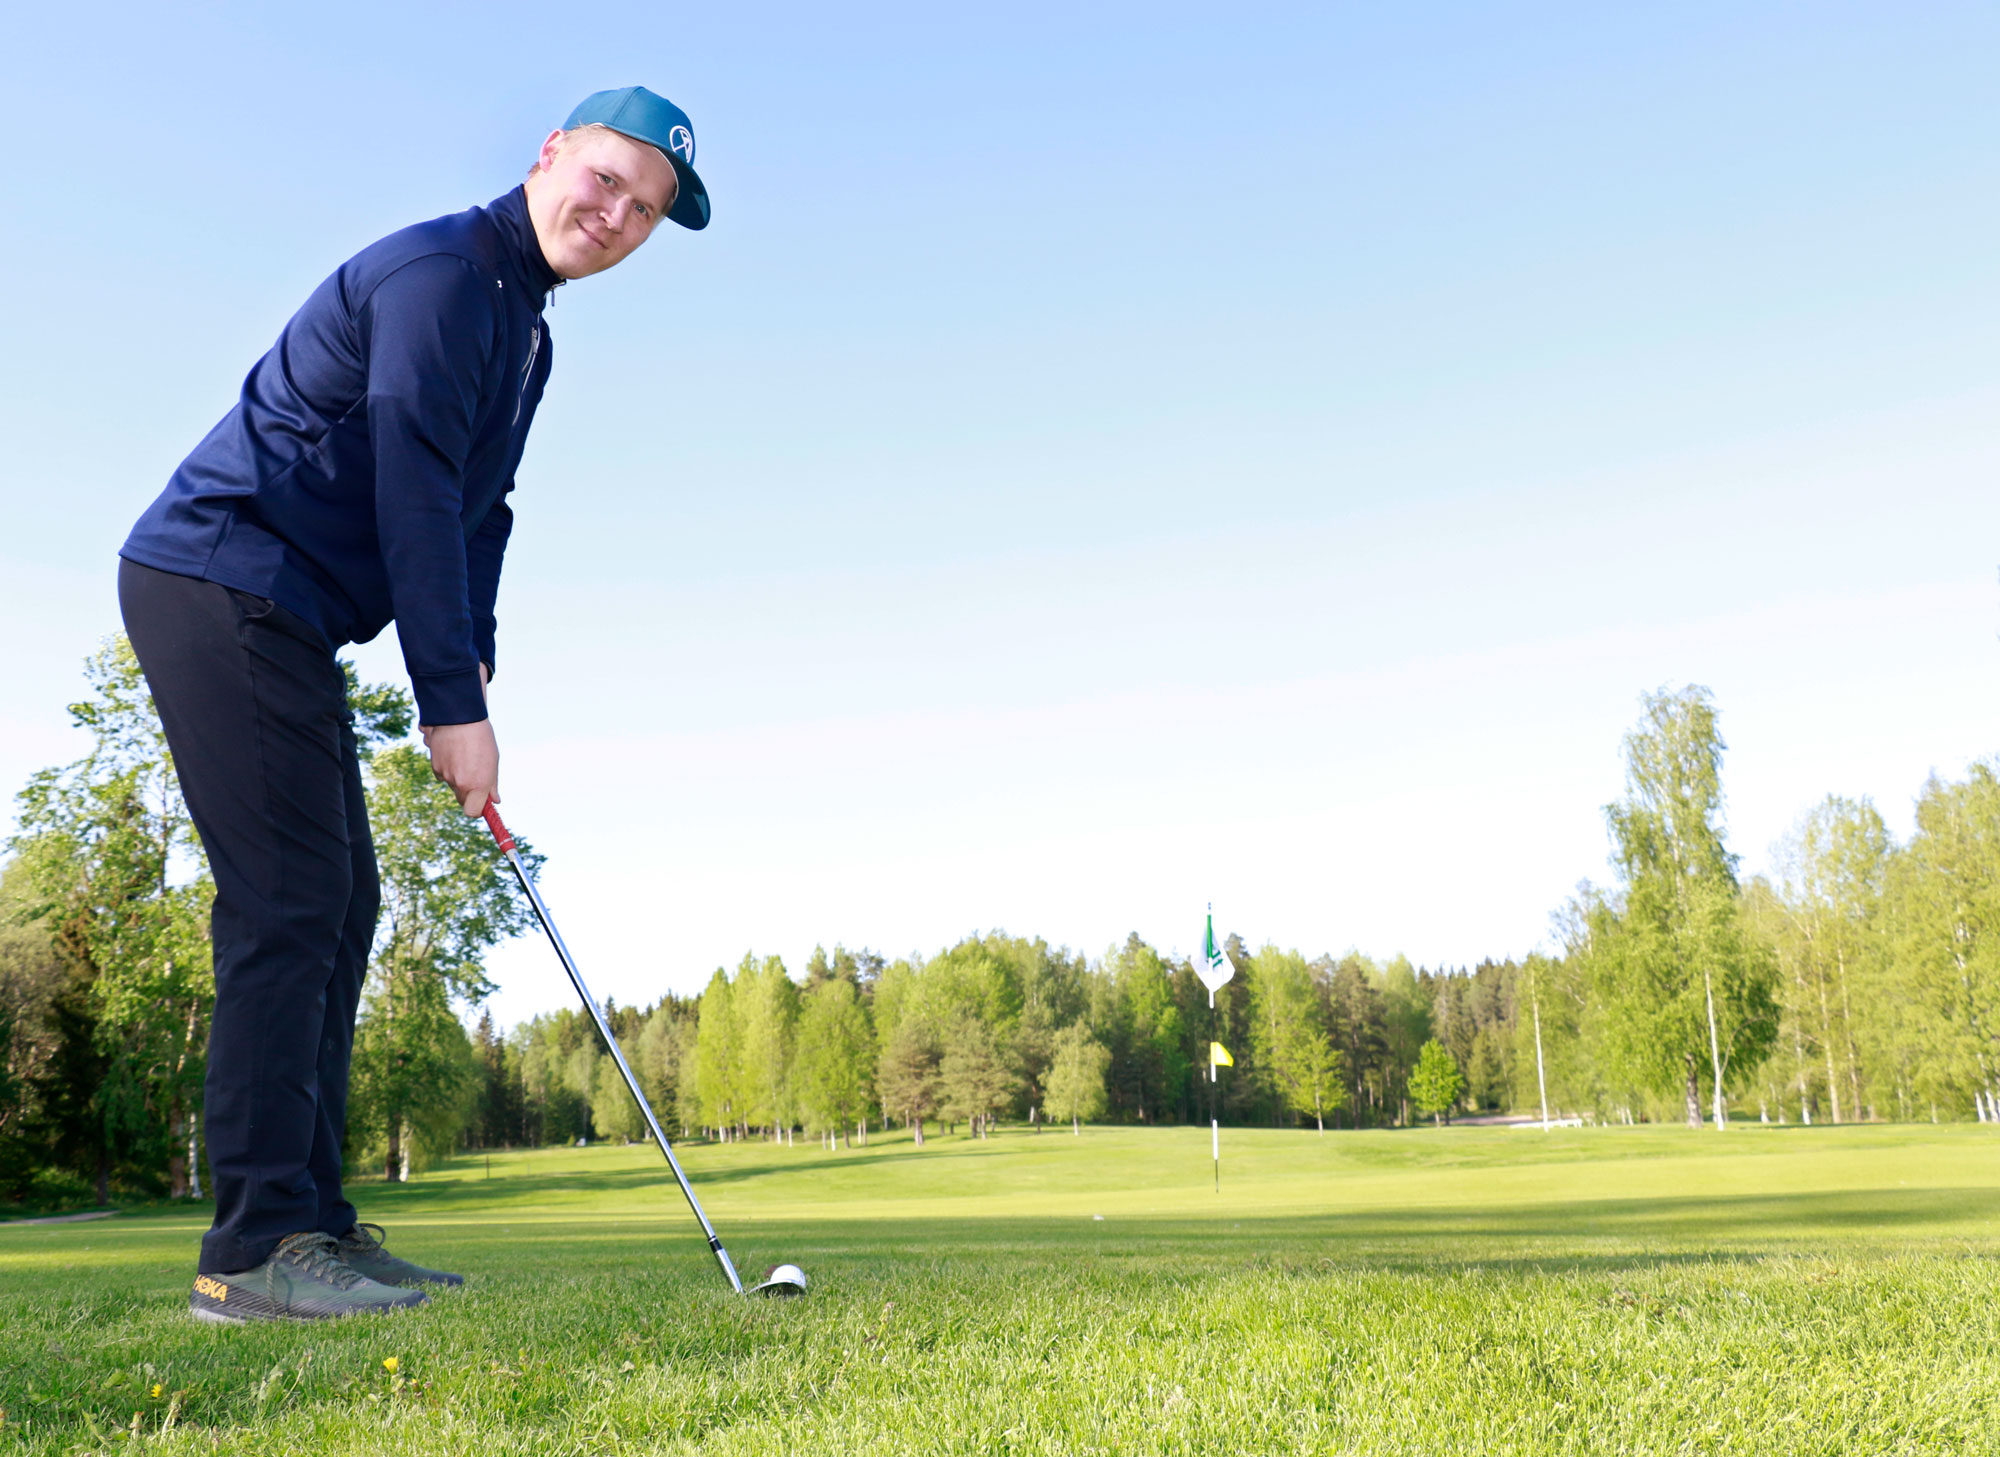 Henri Hytönen perusti Golfholisti-yrityksensä, jotta voi auttaa golfaajia kehittymään ja saamaan enemmän irti lajista.